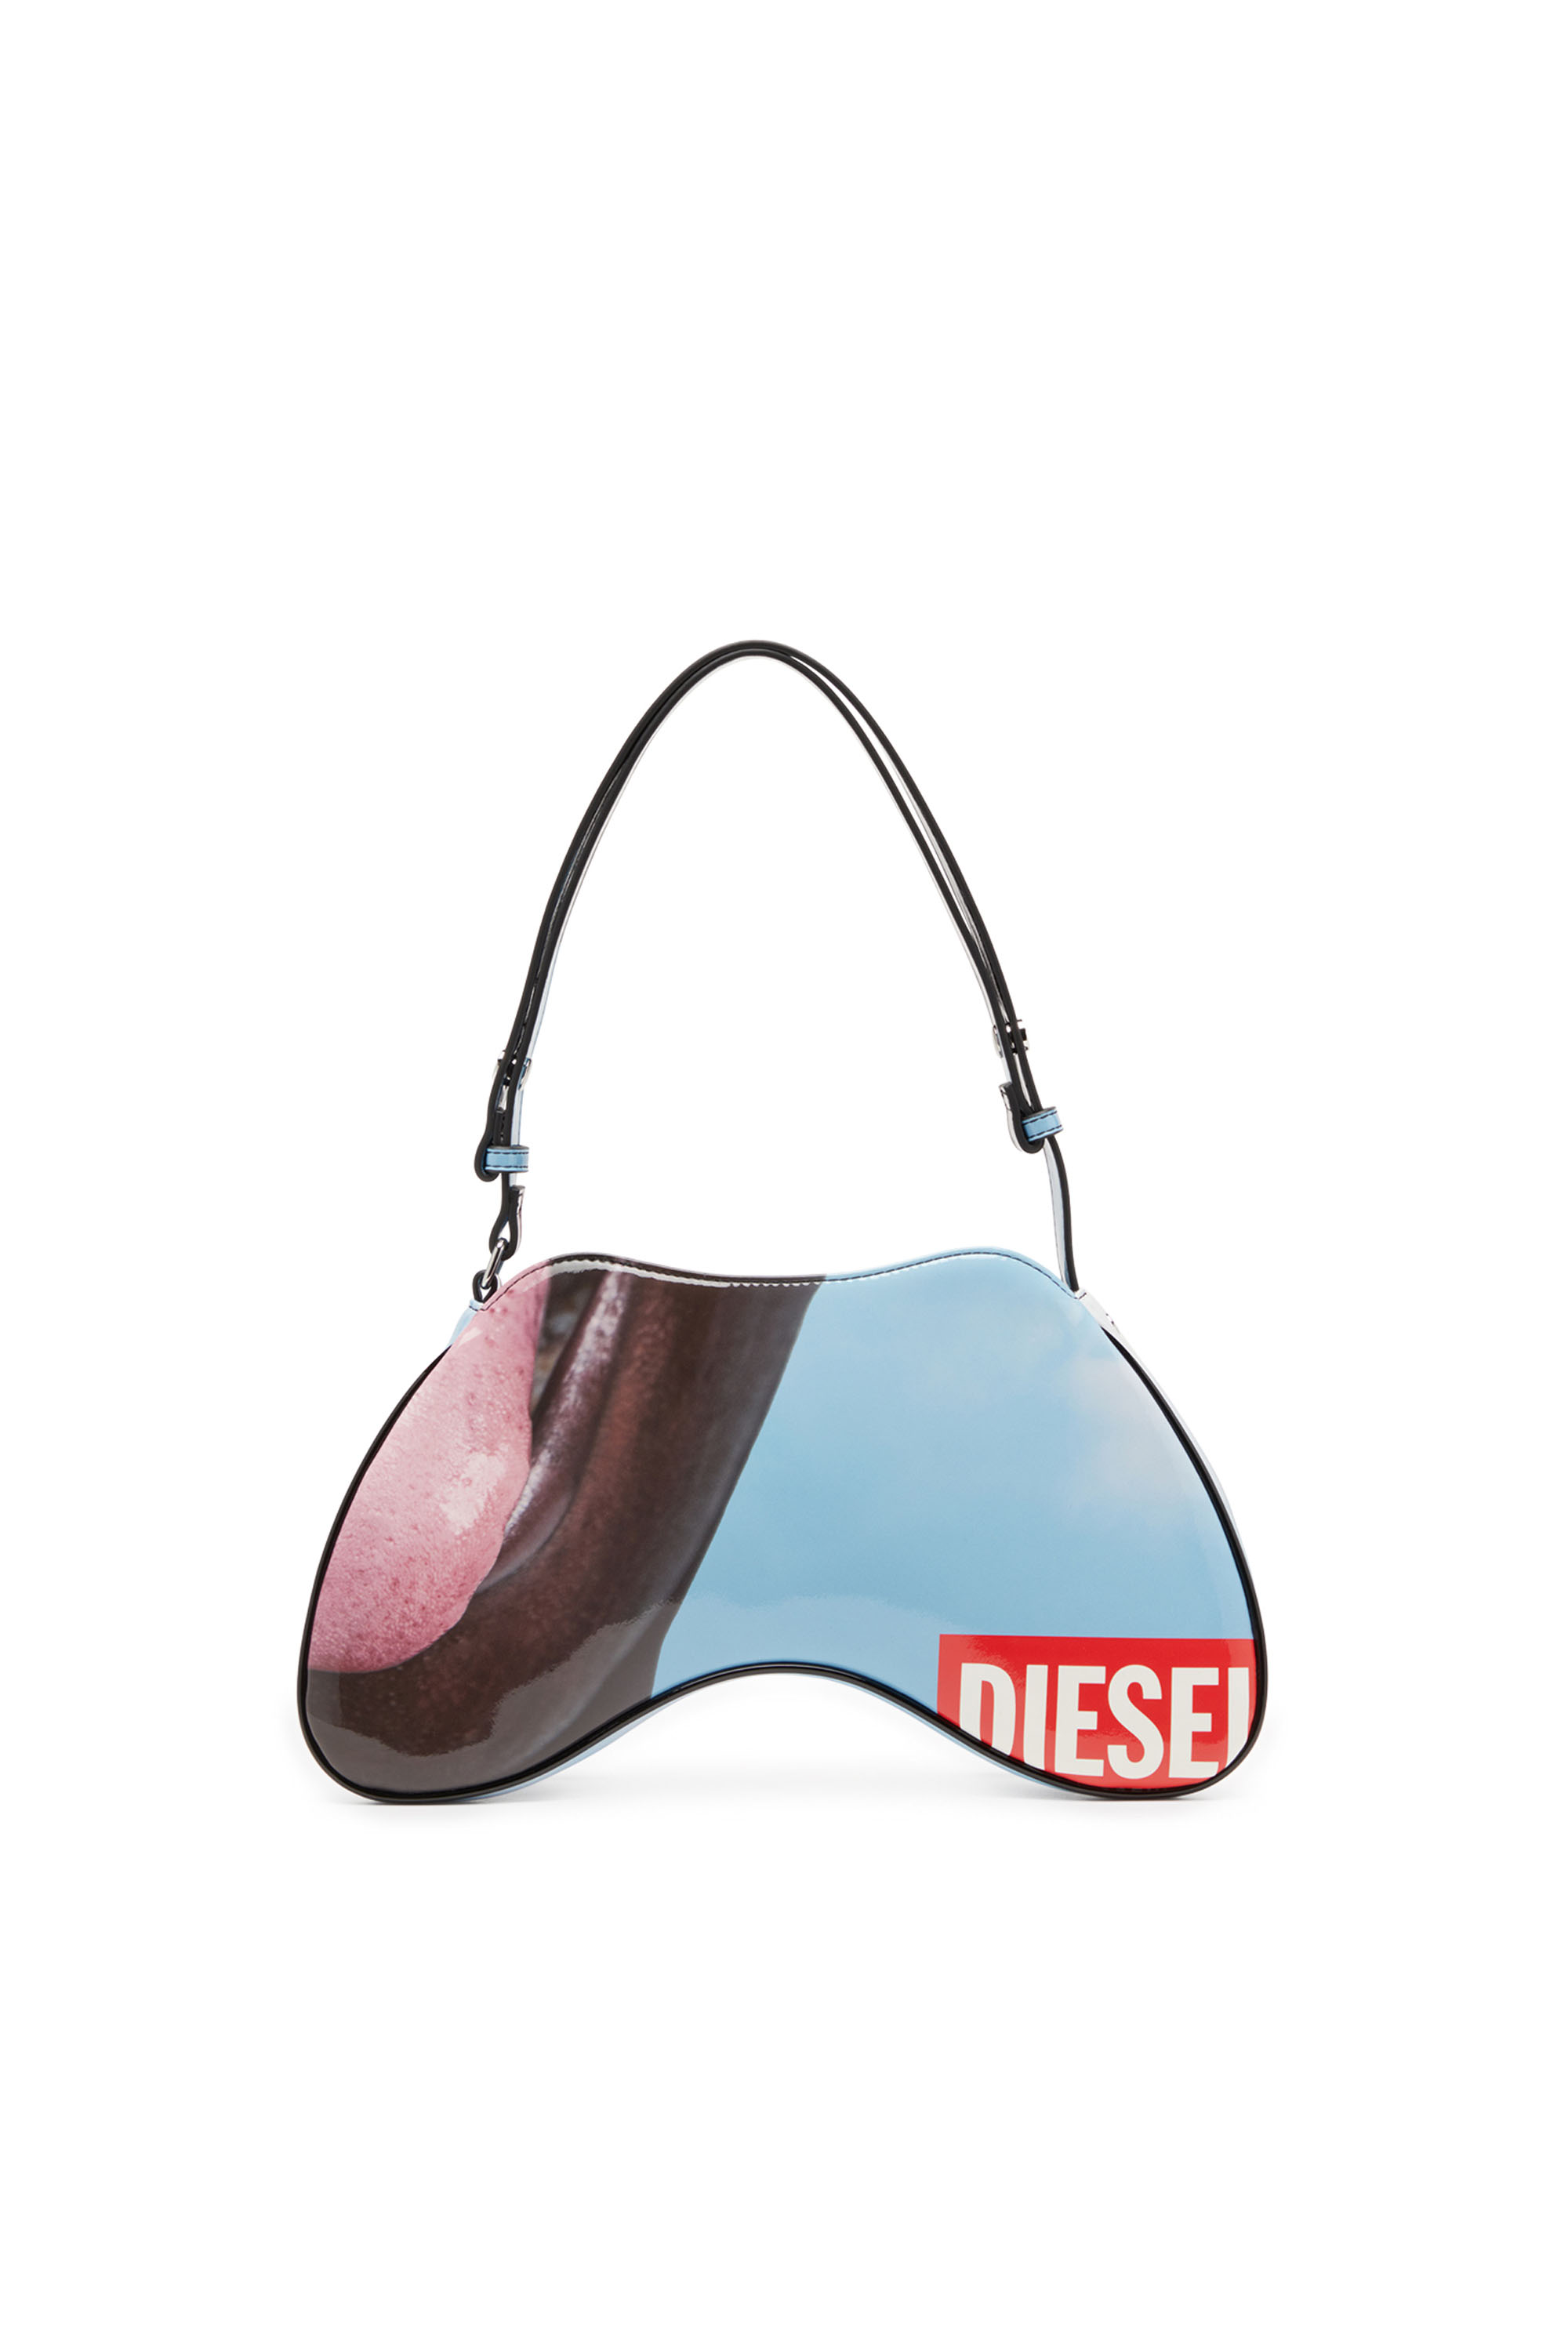 Diesel - PLAY SHOULDER, Female Play-Shoulder bag in printed glossy PU in Multicolor - Image 3